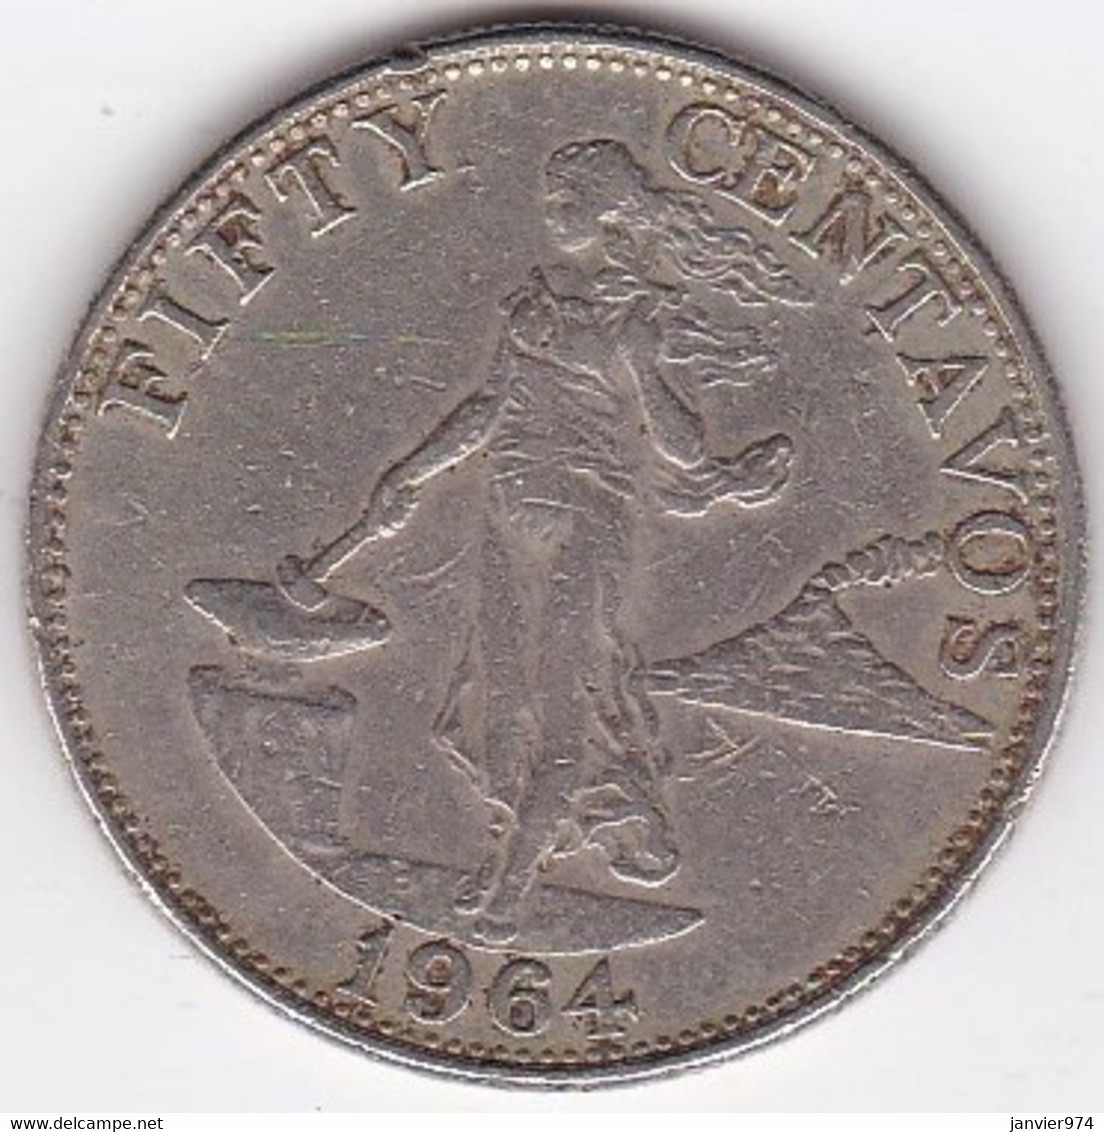 Philippines 50 Centavos 1964, En Nickel Brass, KM# 190 - Filipinas